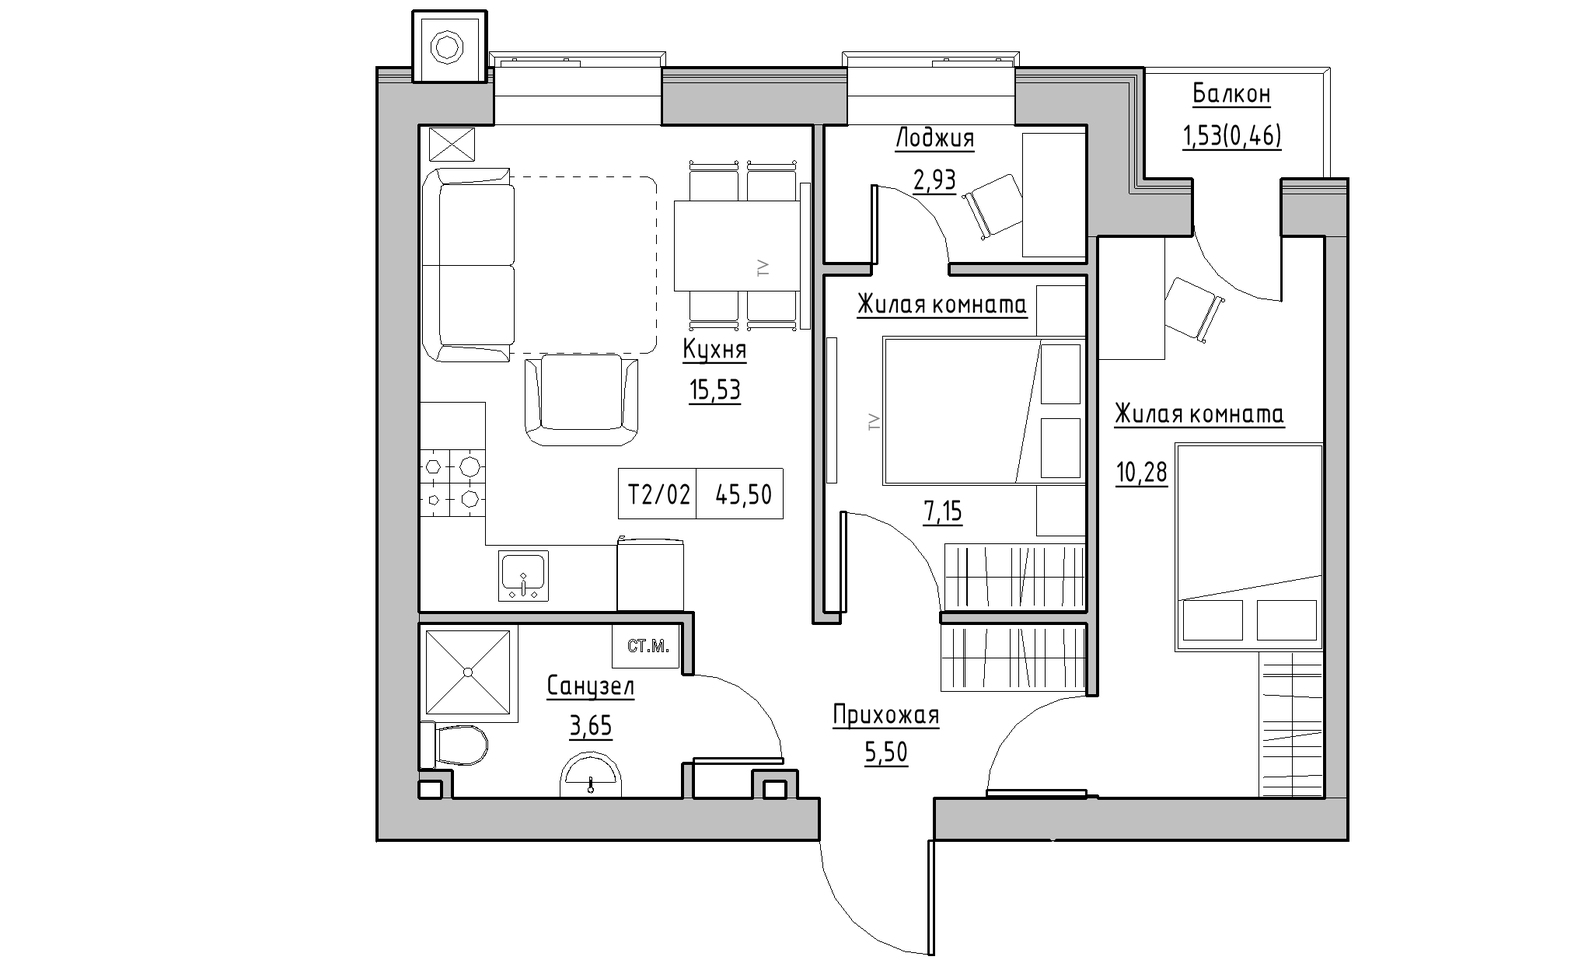 Планировка 2-к квартира площей 45.5м2, KS-014-02/0008.